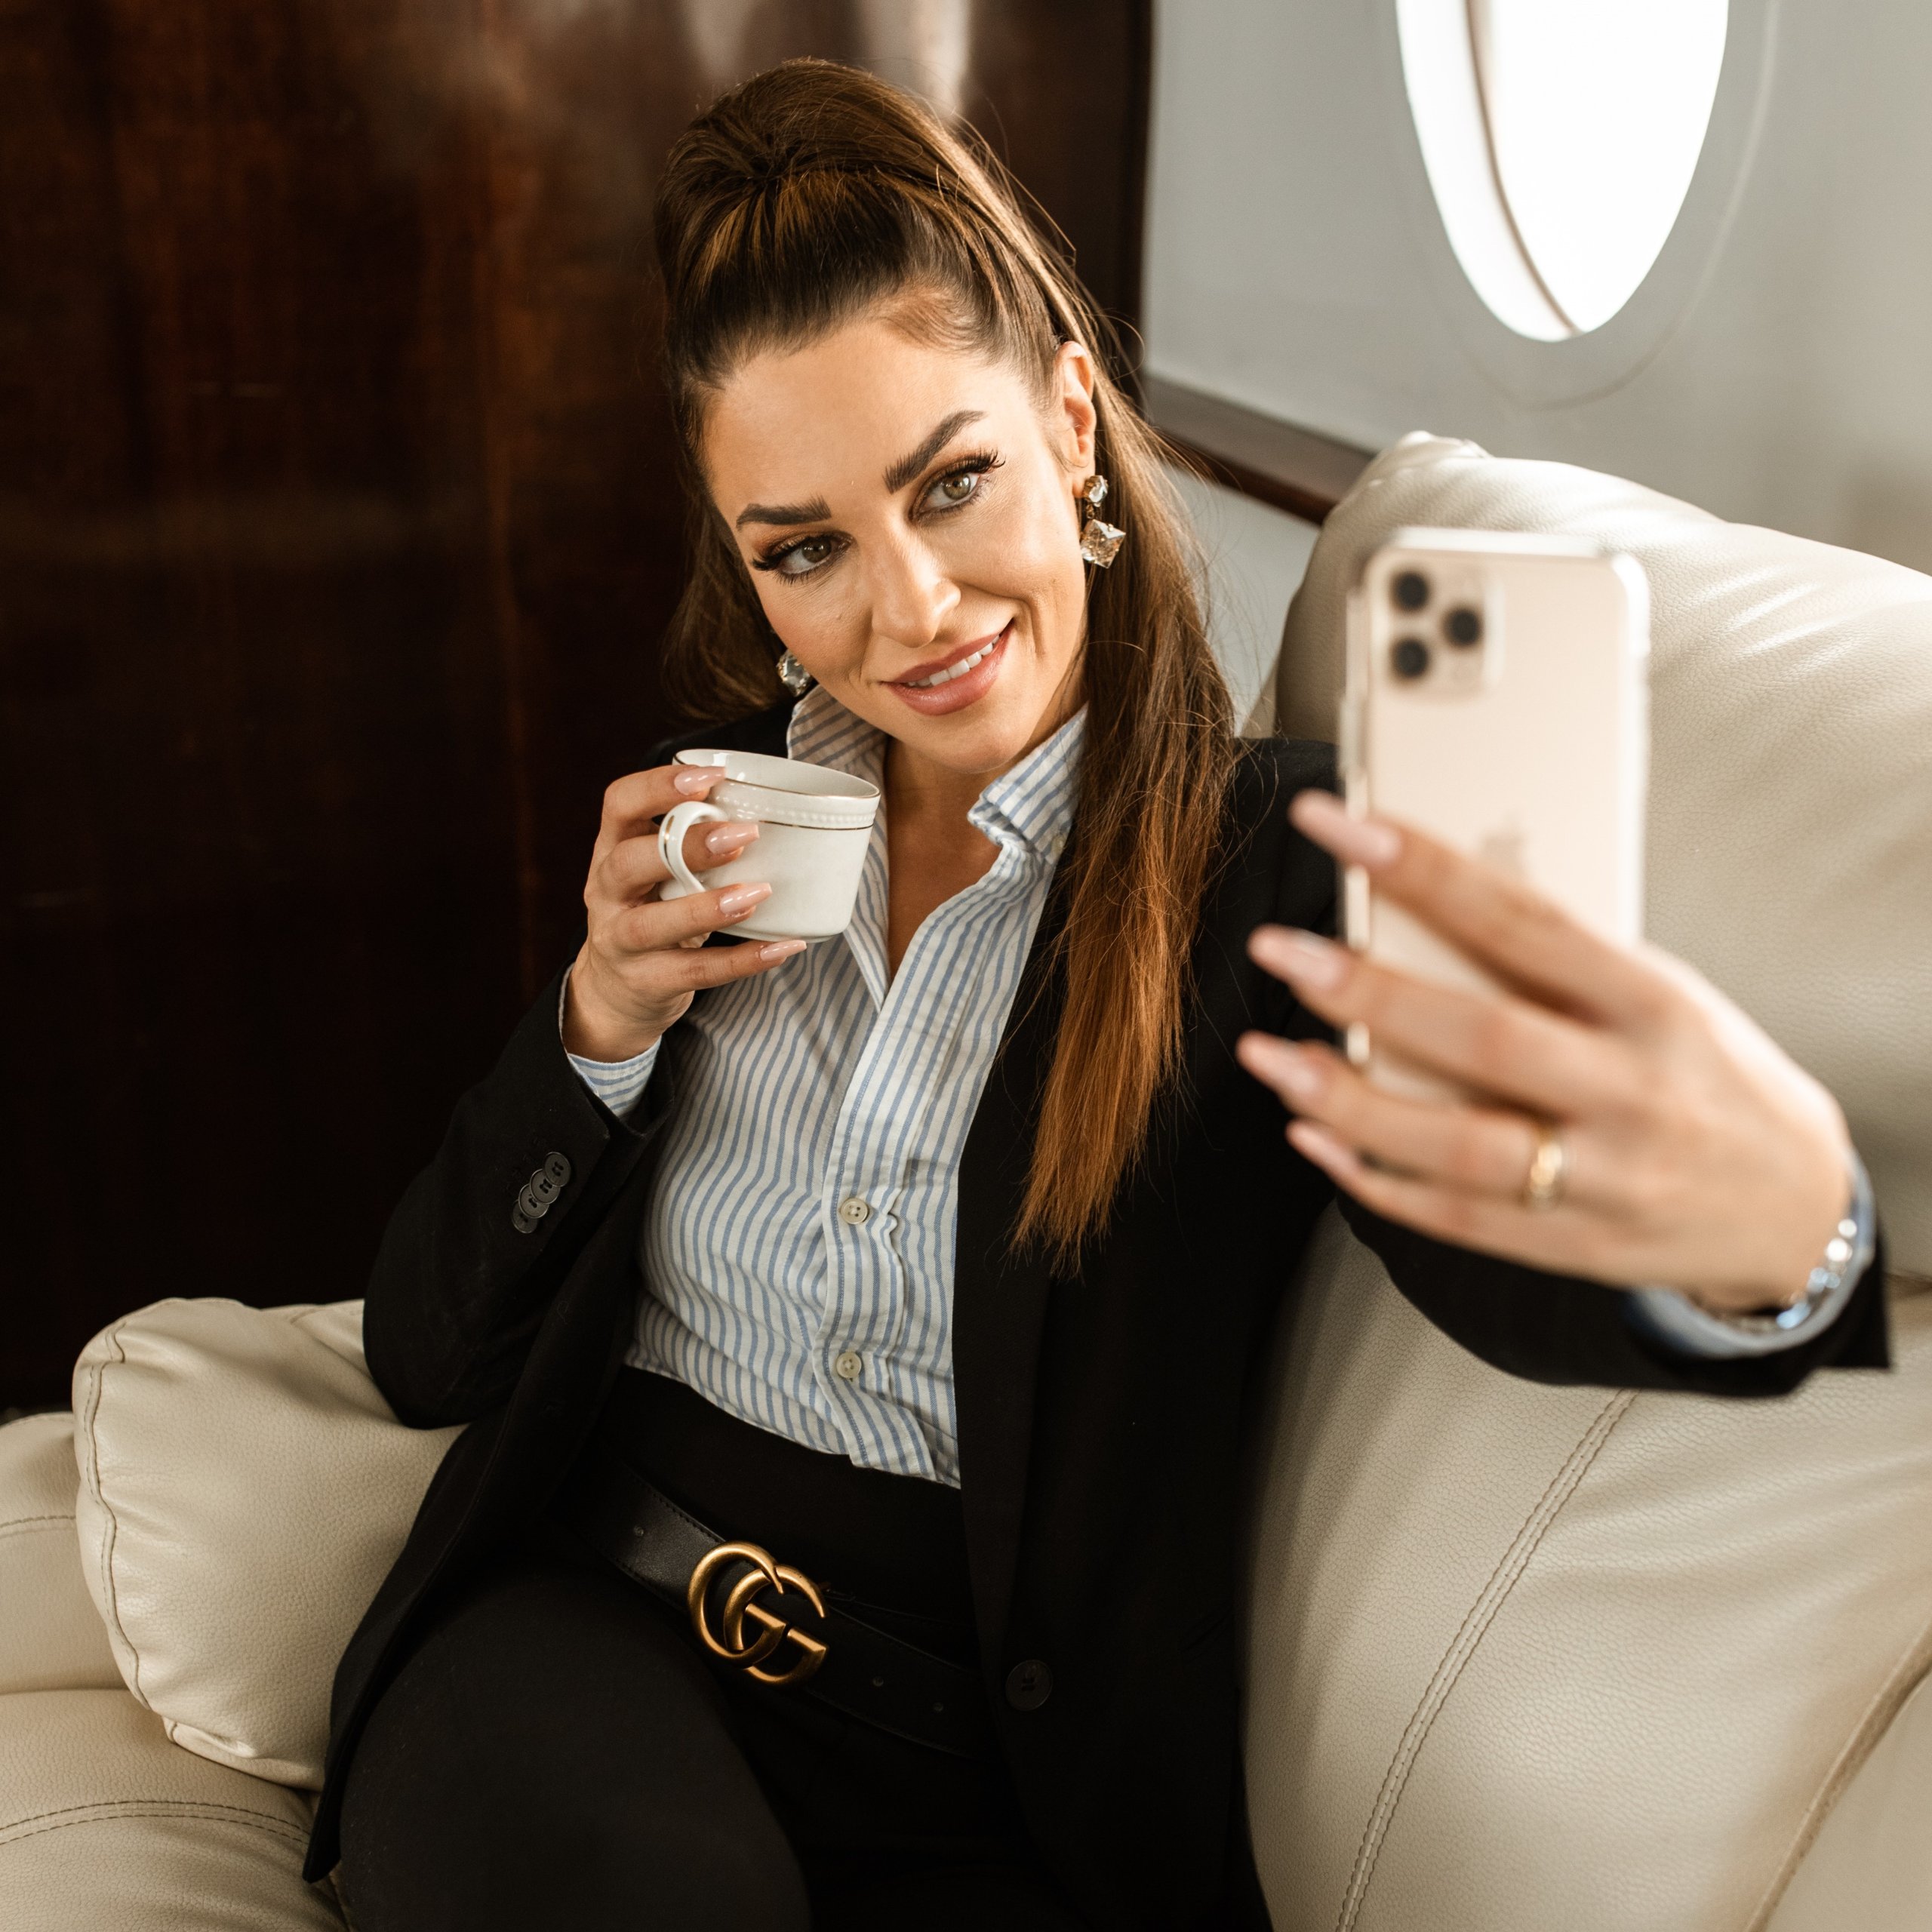 Business Frau mit Handy macht ein Selfie